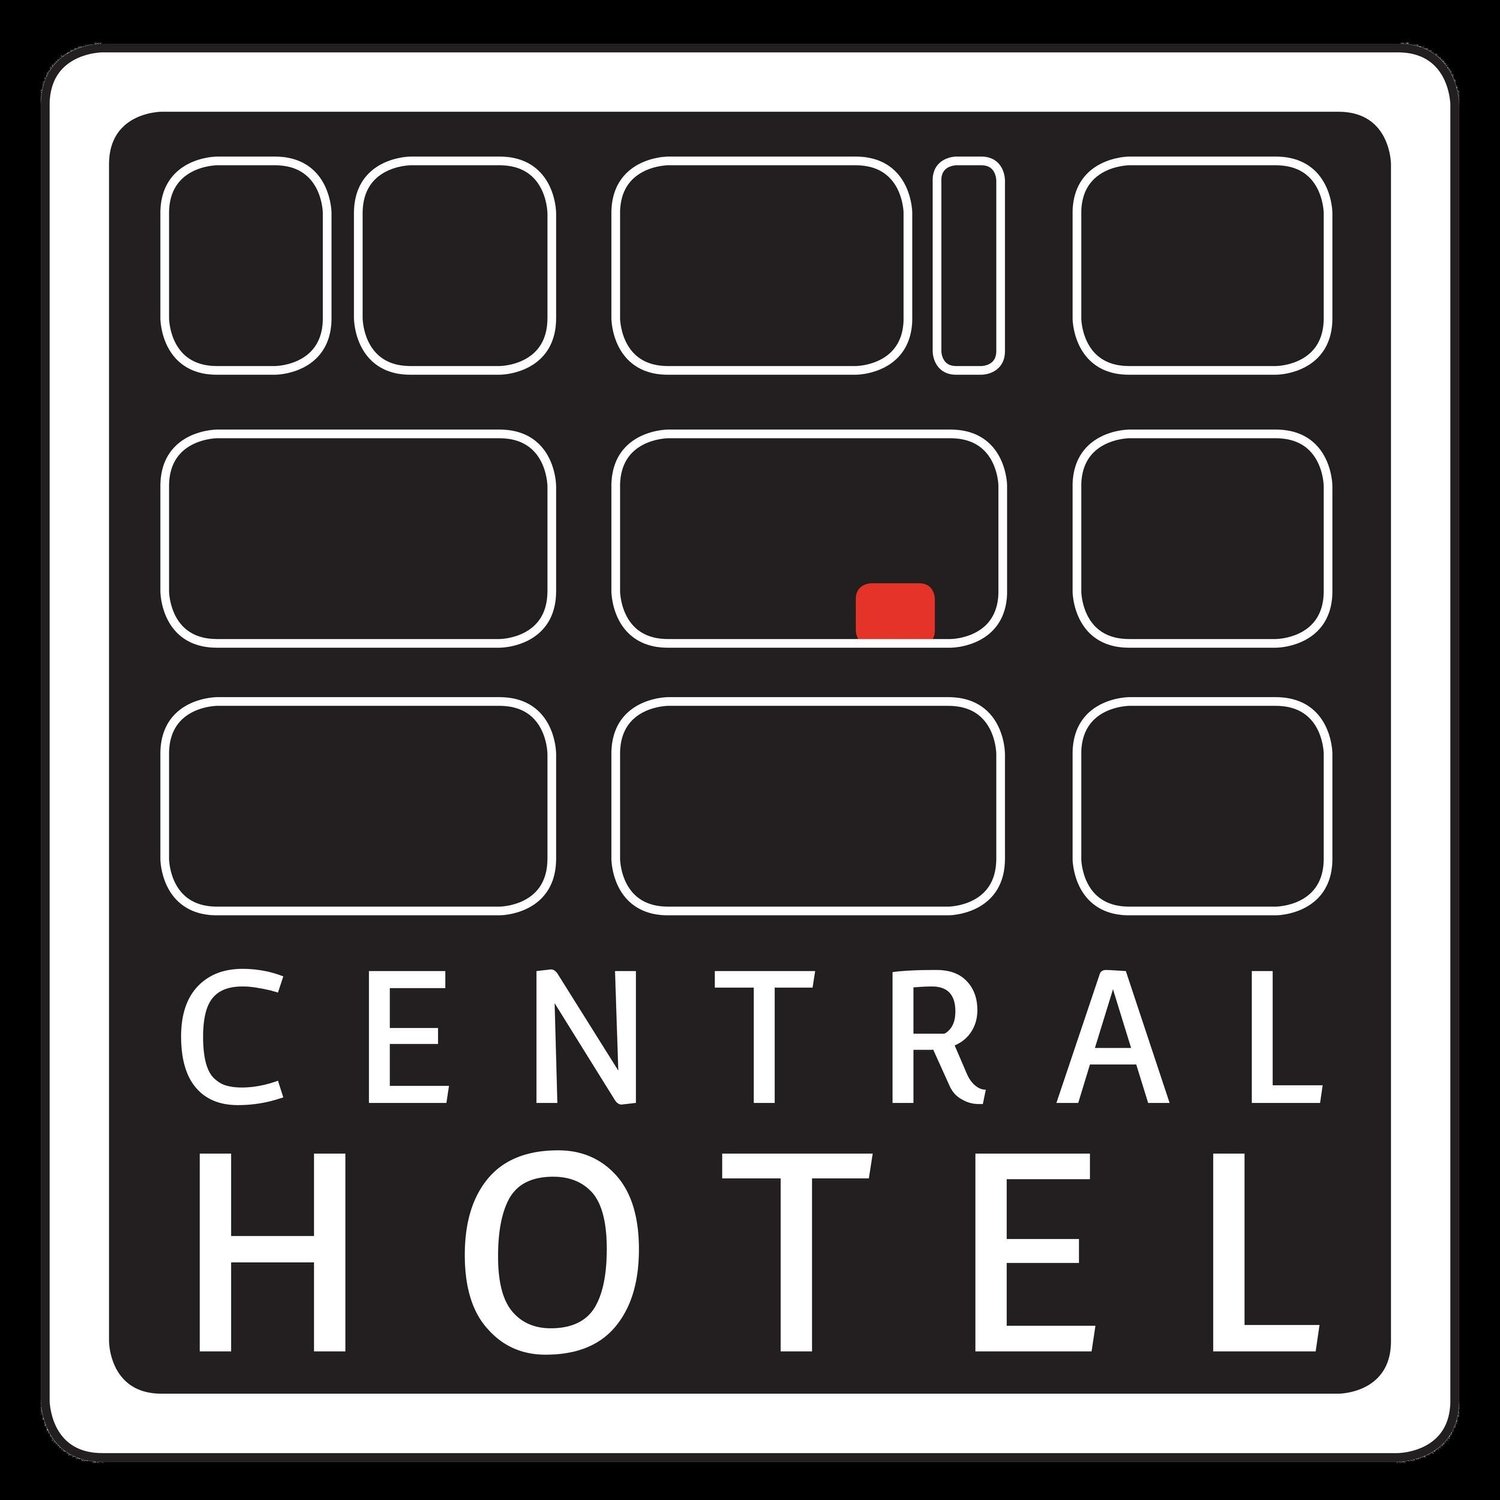 Central Hotel Hobart